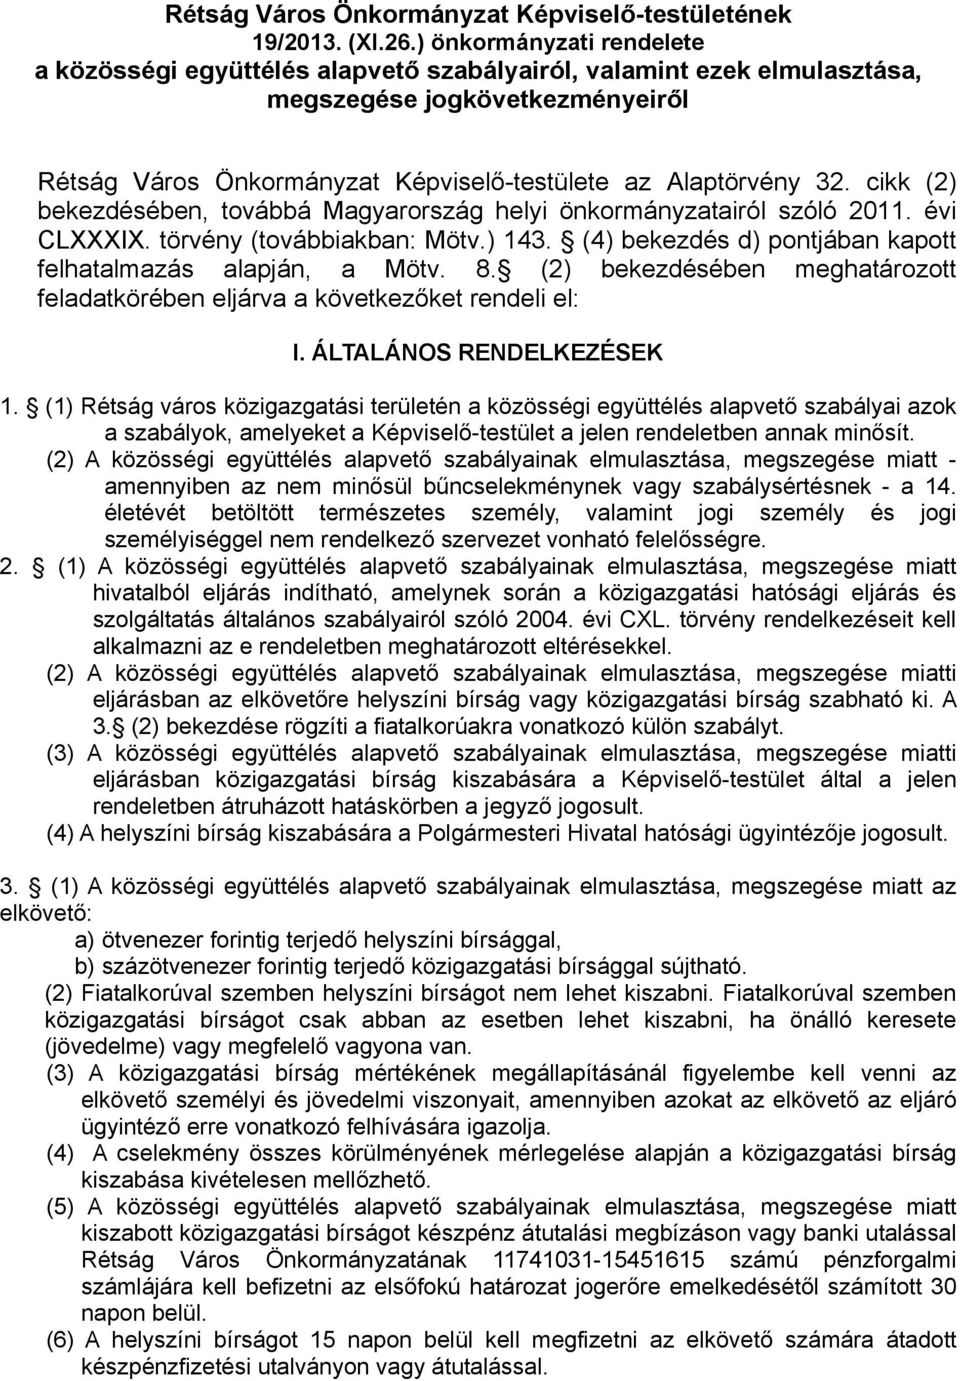 cikk (2) bekezdésében, továbbá Magyarország helyi önkormányzatairól szóló 2011. évi CLXXXIX. törvény (továbbiakban: Mötv.) 143. (4) bekezdés d) pontjában kapott felhatalmazás alapján, a Mötv. 8.